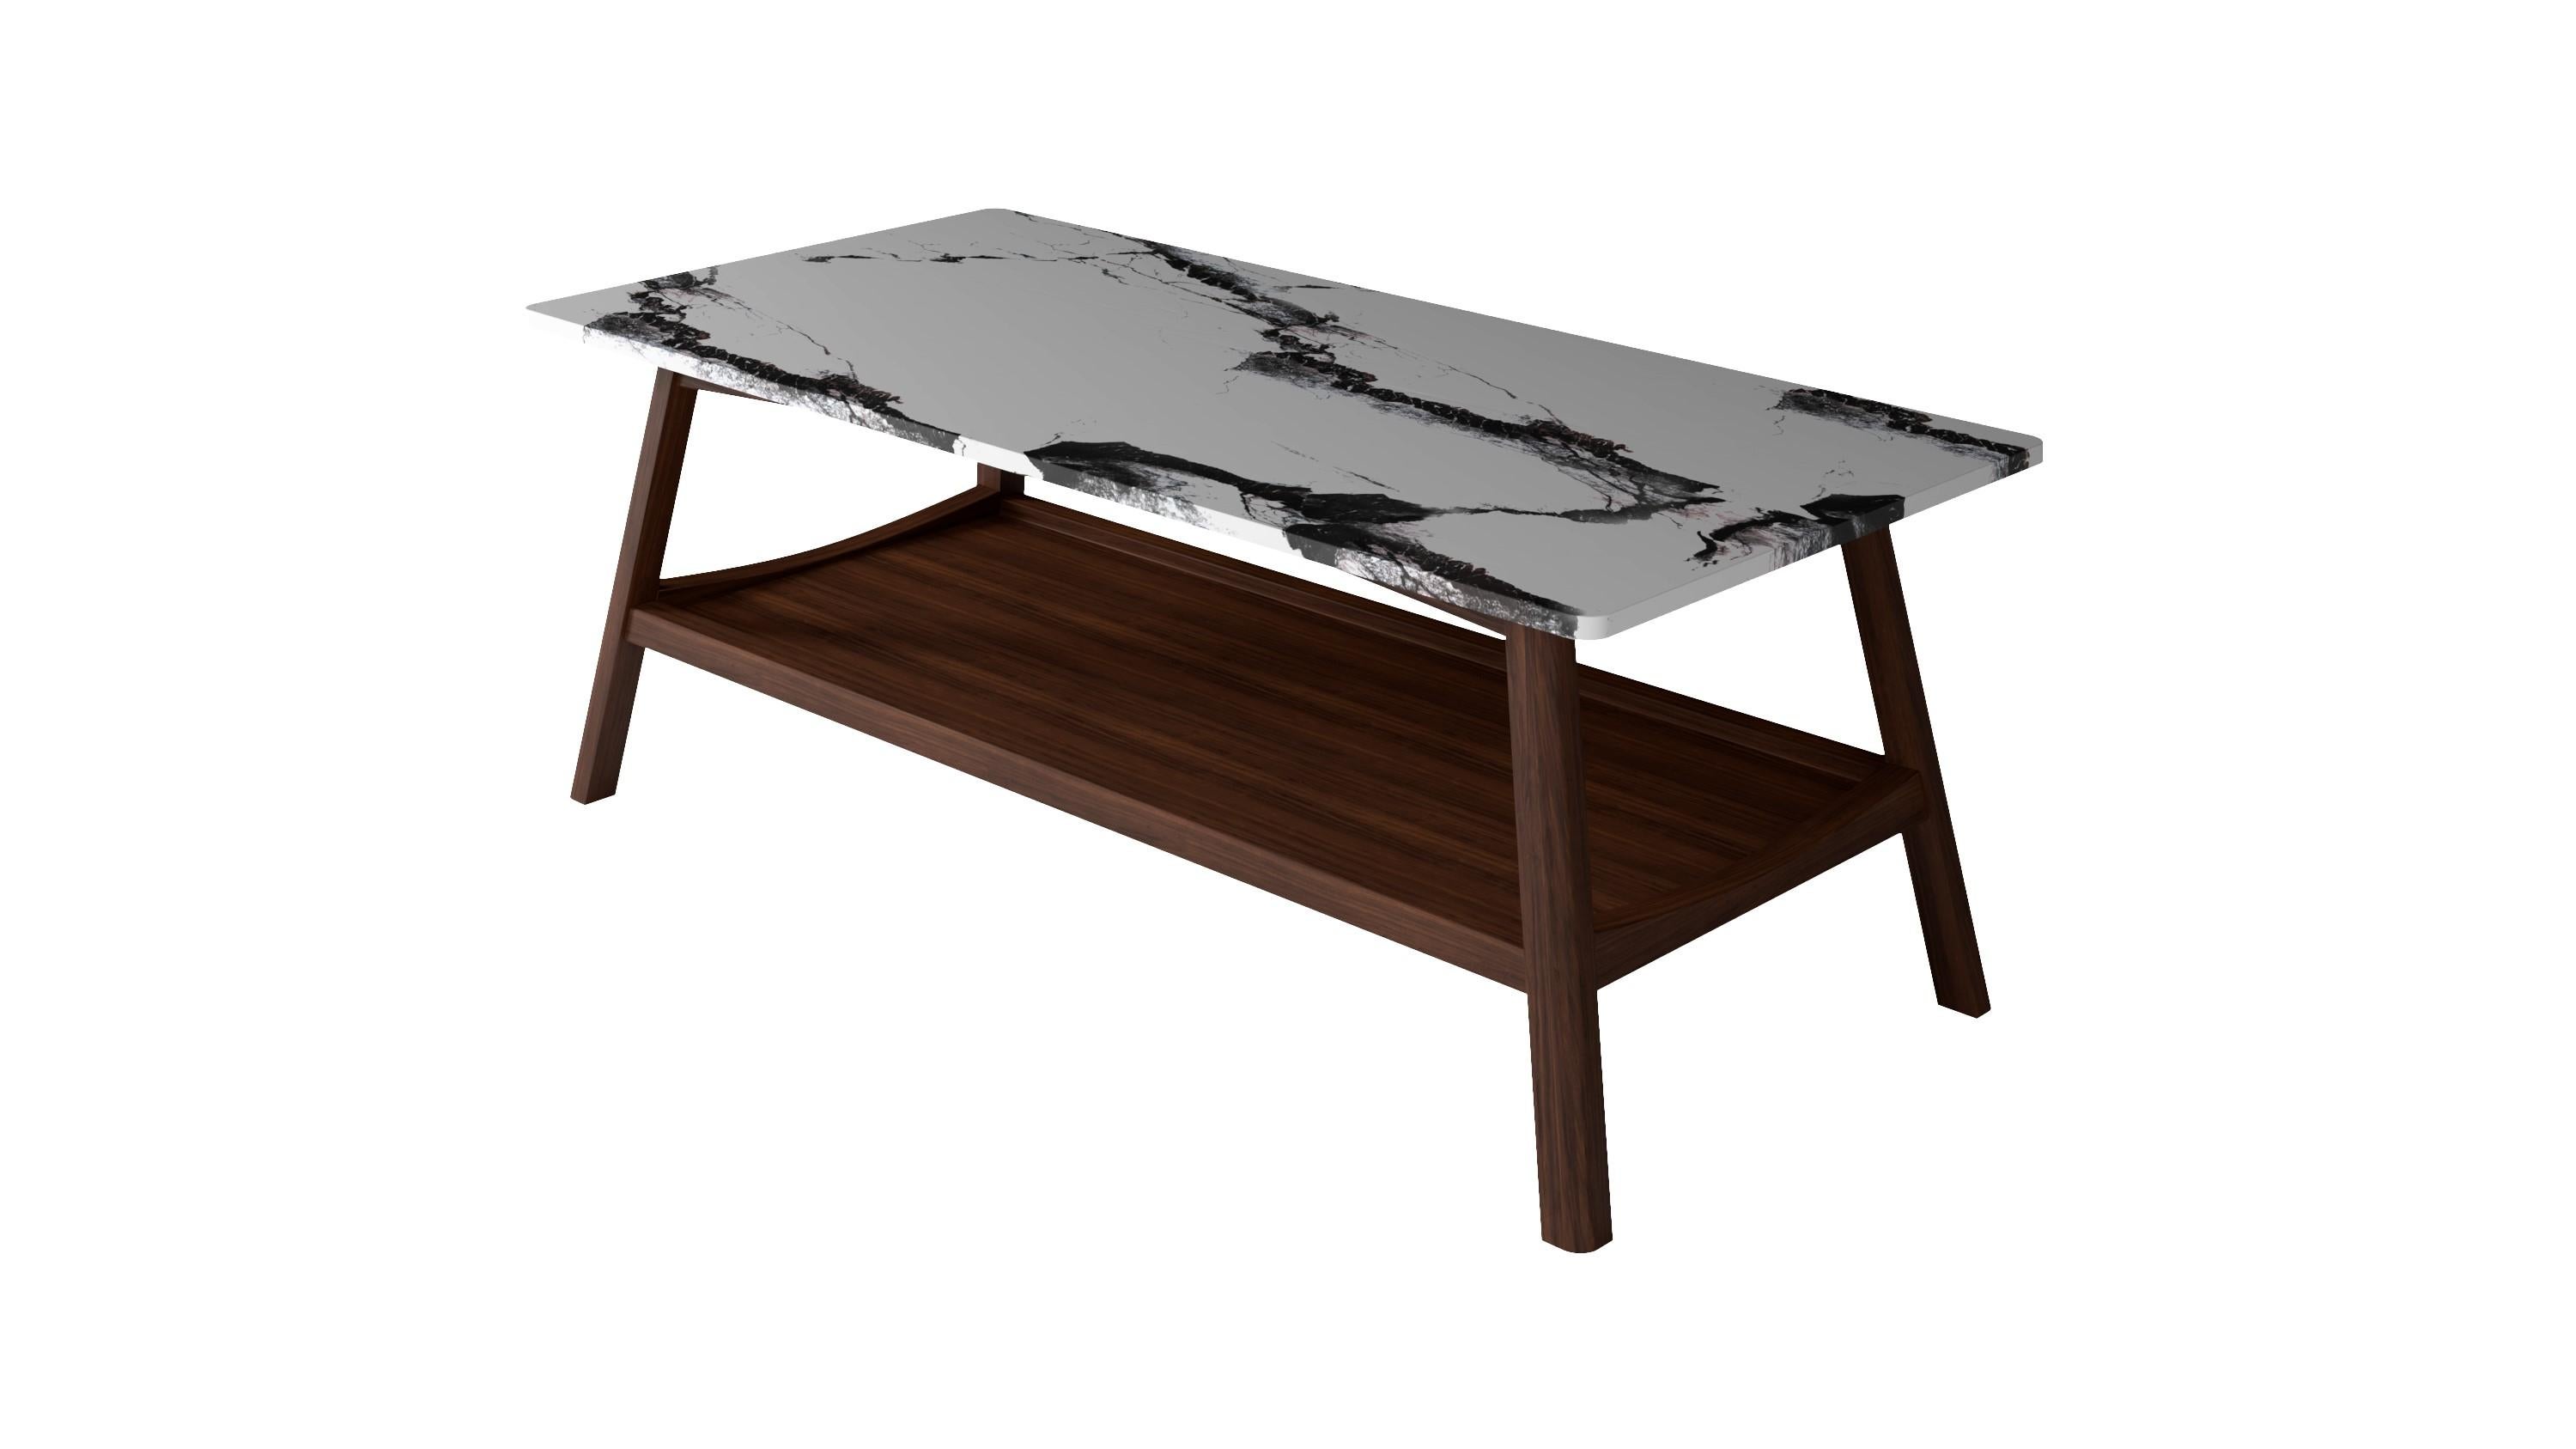 𝗣𝗿𝗼𝗱𝘂𝗰𝘁 𝗗𝗲𝘁𝗮𝗶𝗹𝘀 :
La table basse KAREN est issue d'une combinaison de marbre exclusif et de bois naturel. Une combinaison d'éléments vieux de plus de 50 ans issus de l'âge d'or du design danois. Sa forme géométrique simple et ses